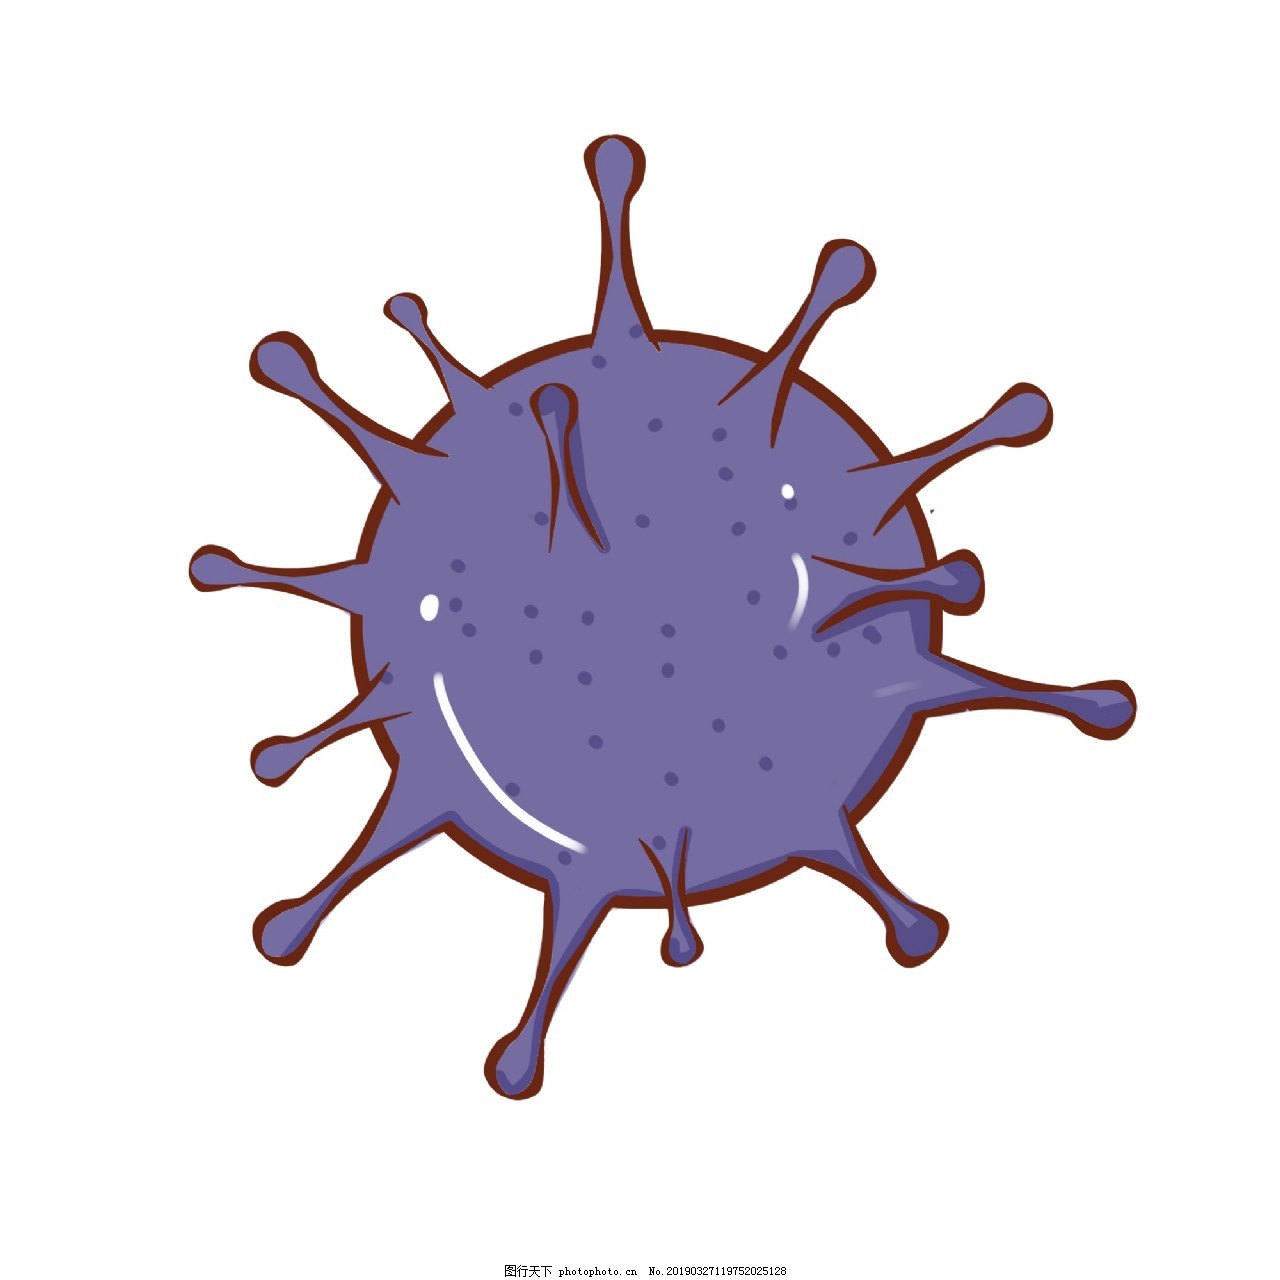 Illustration De Jeu De Dessin Animé De Microbe De Bactéries De Virus ...